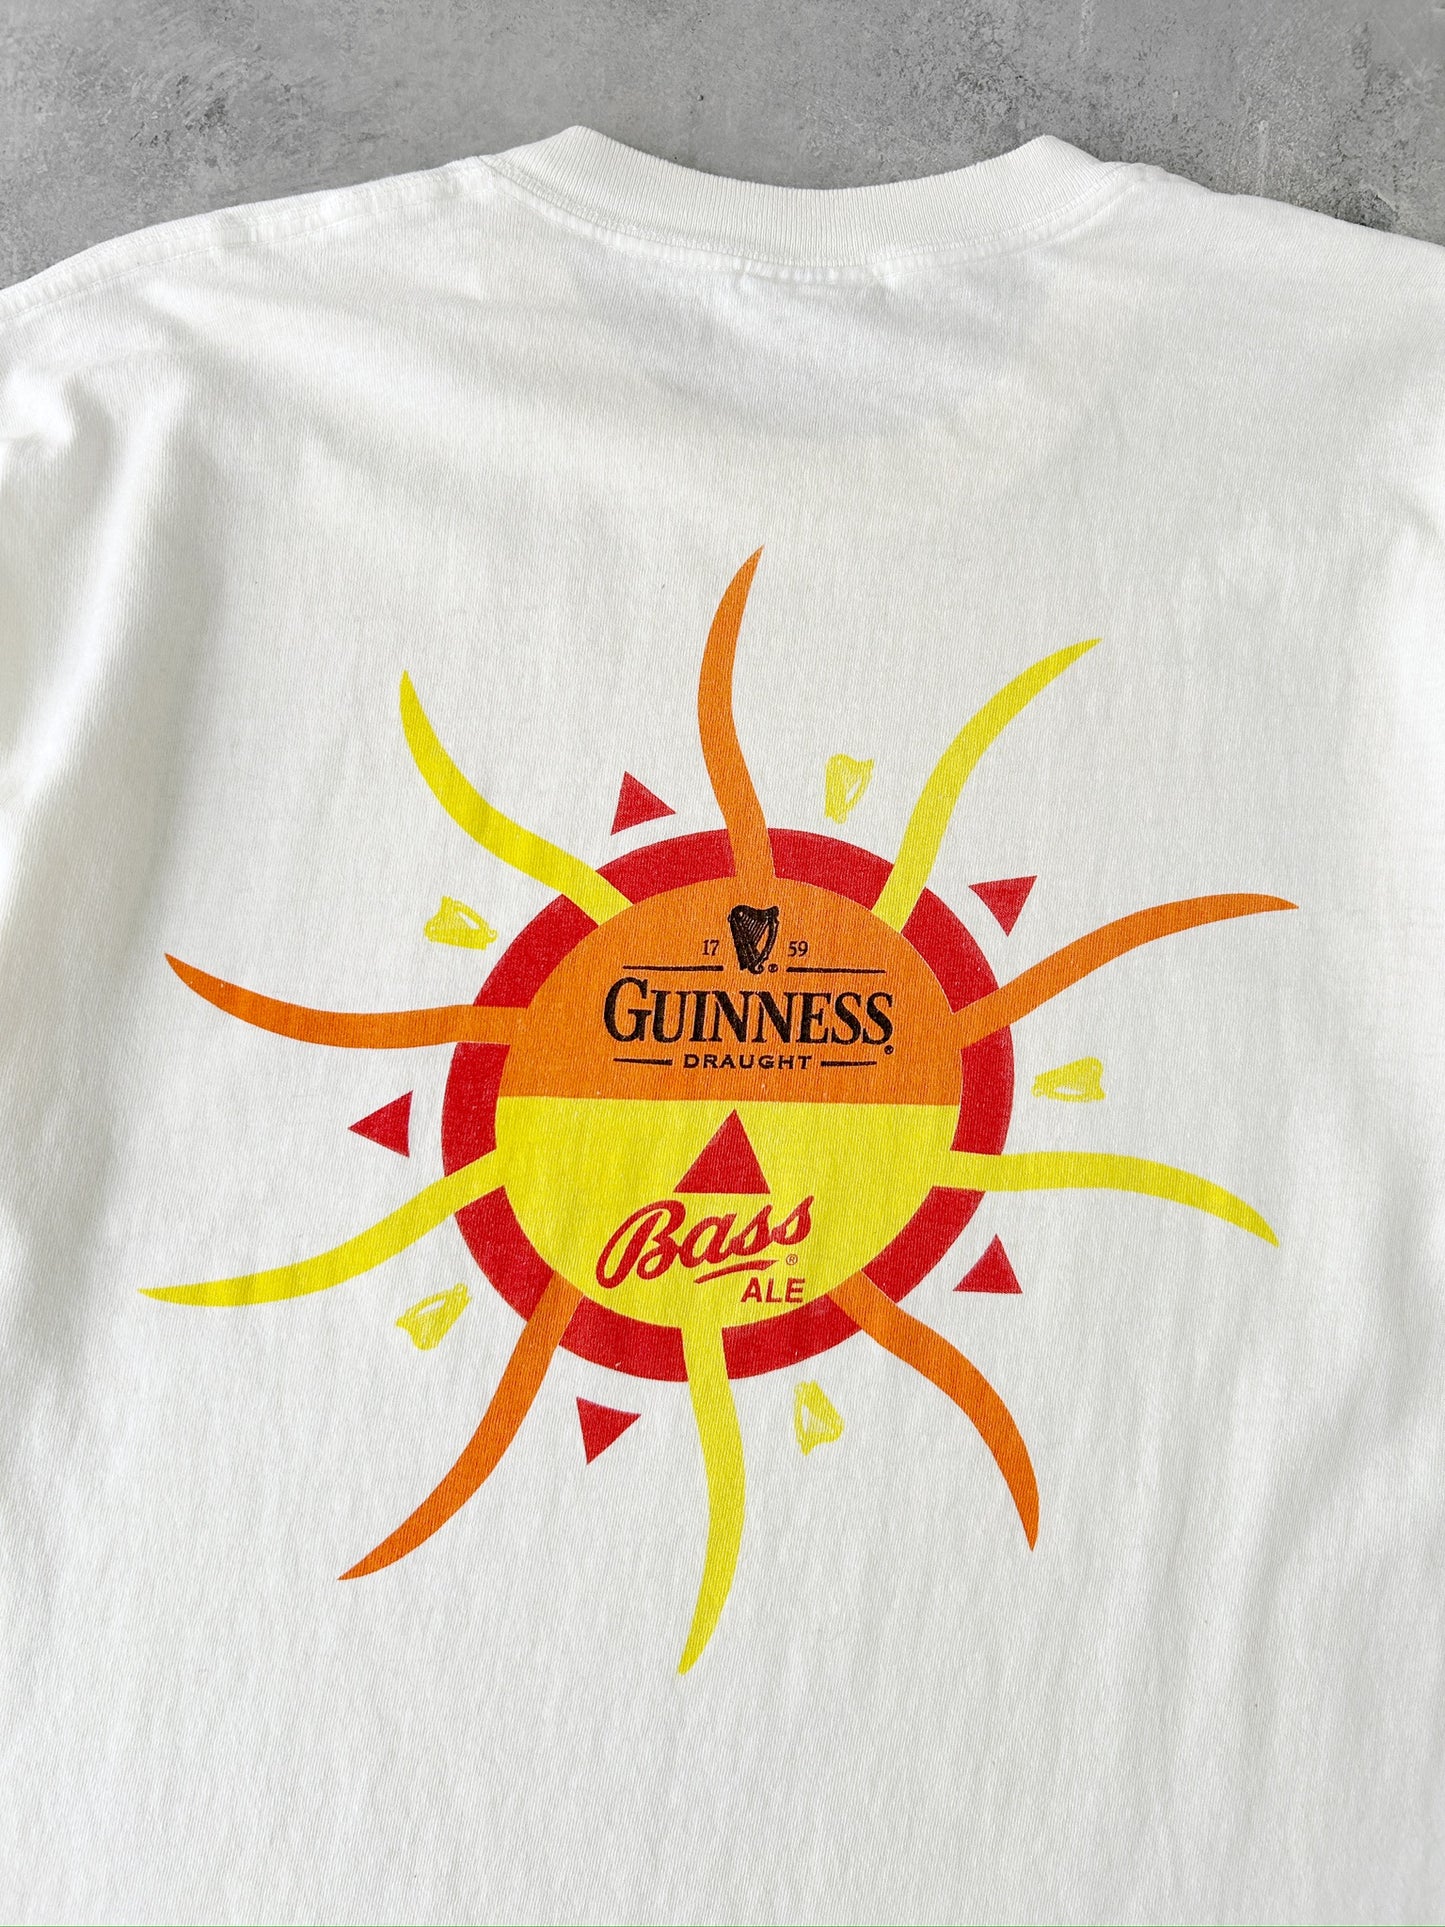 Guinness Bass Ale T-Shirt 90's - XL